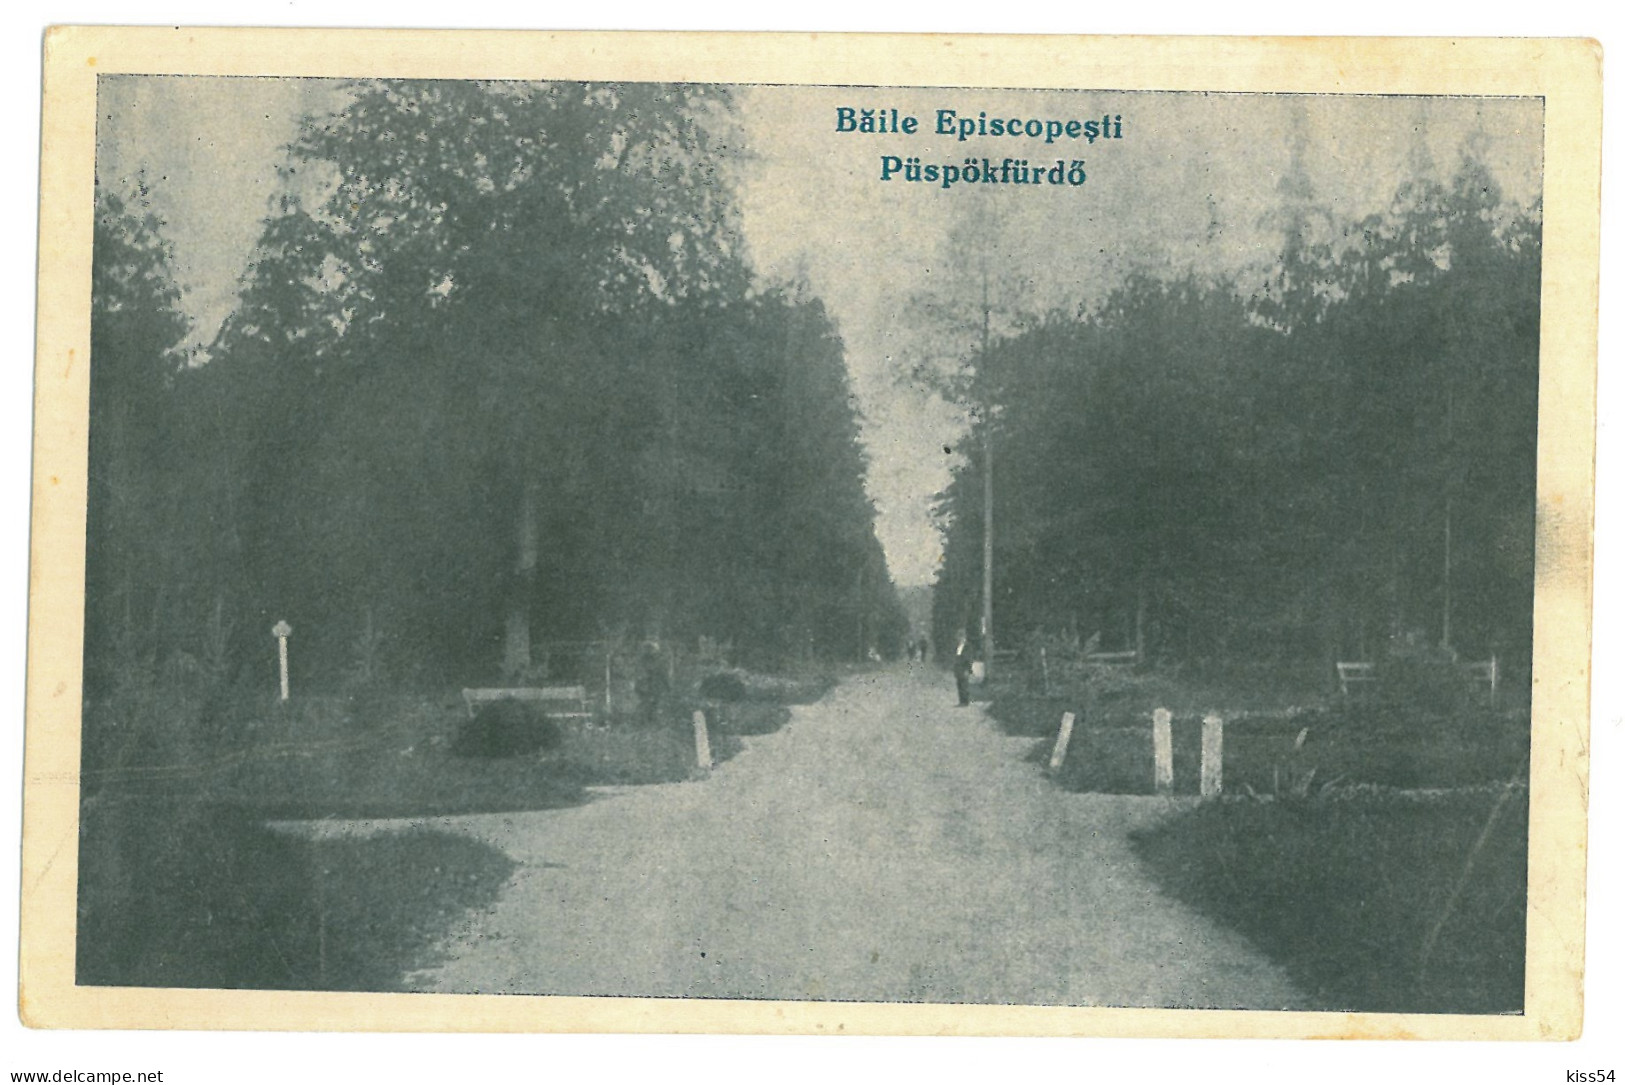 RO 82 - 23781 ORADEA, Baile Episcopesti ( 1 Mai ), Romania - Old Postcard - Unused - Roumanie